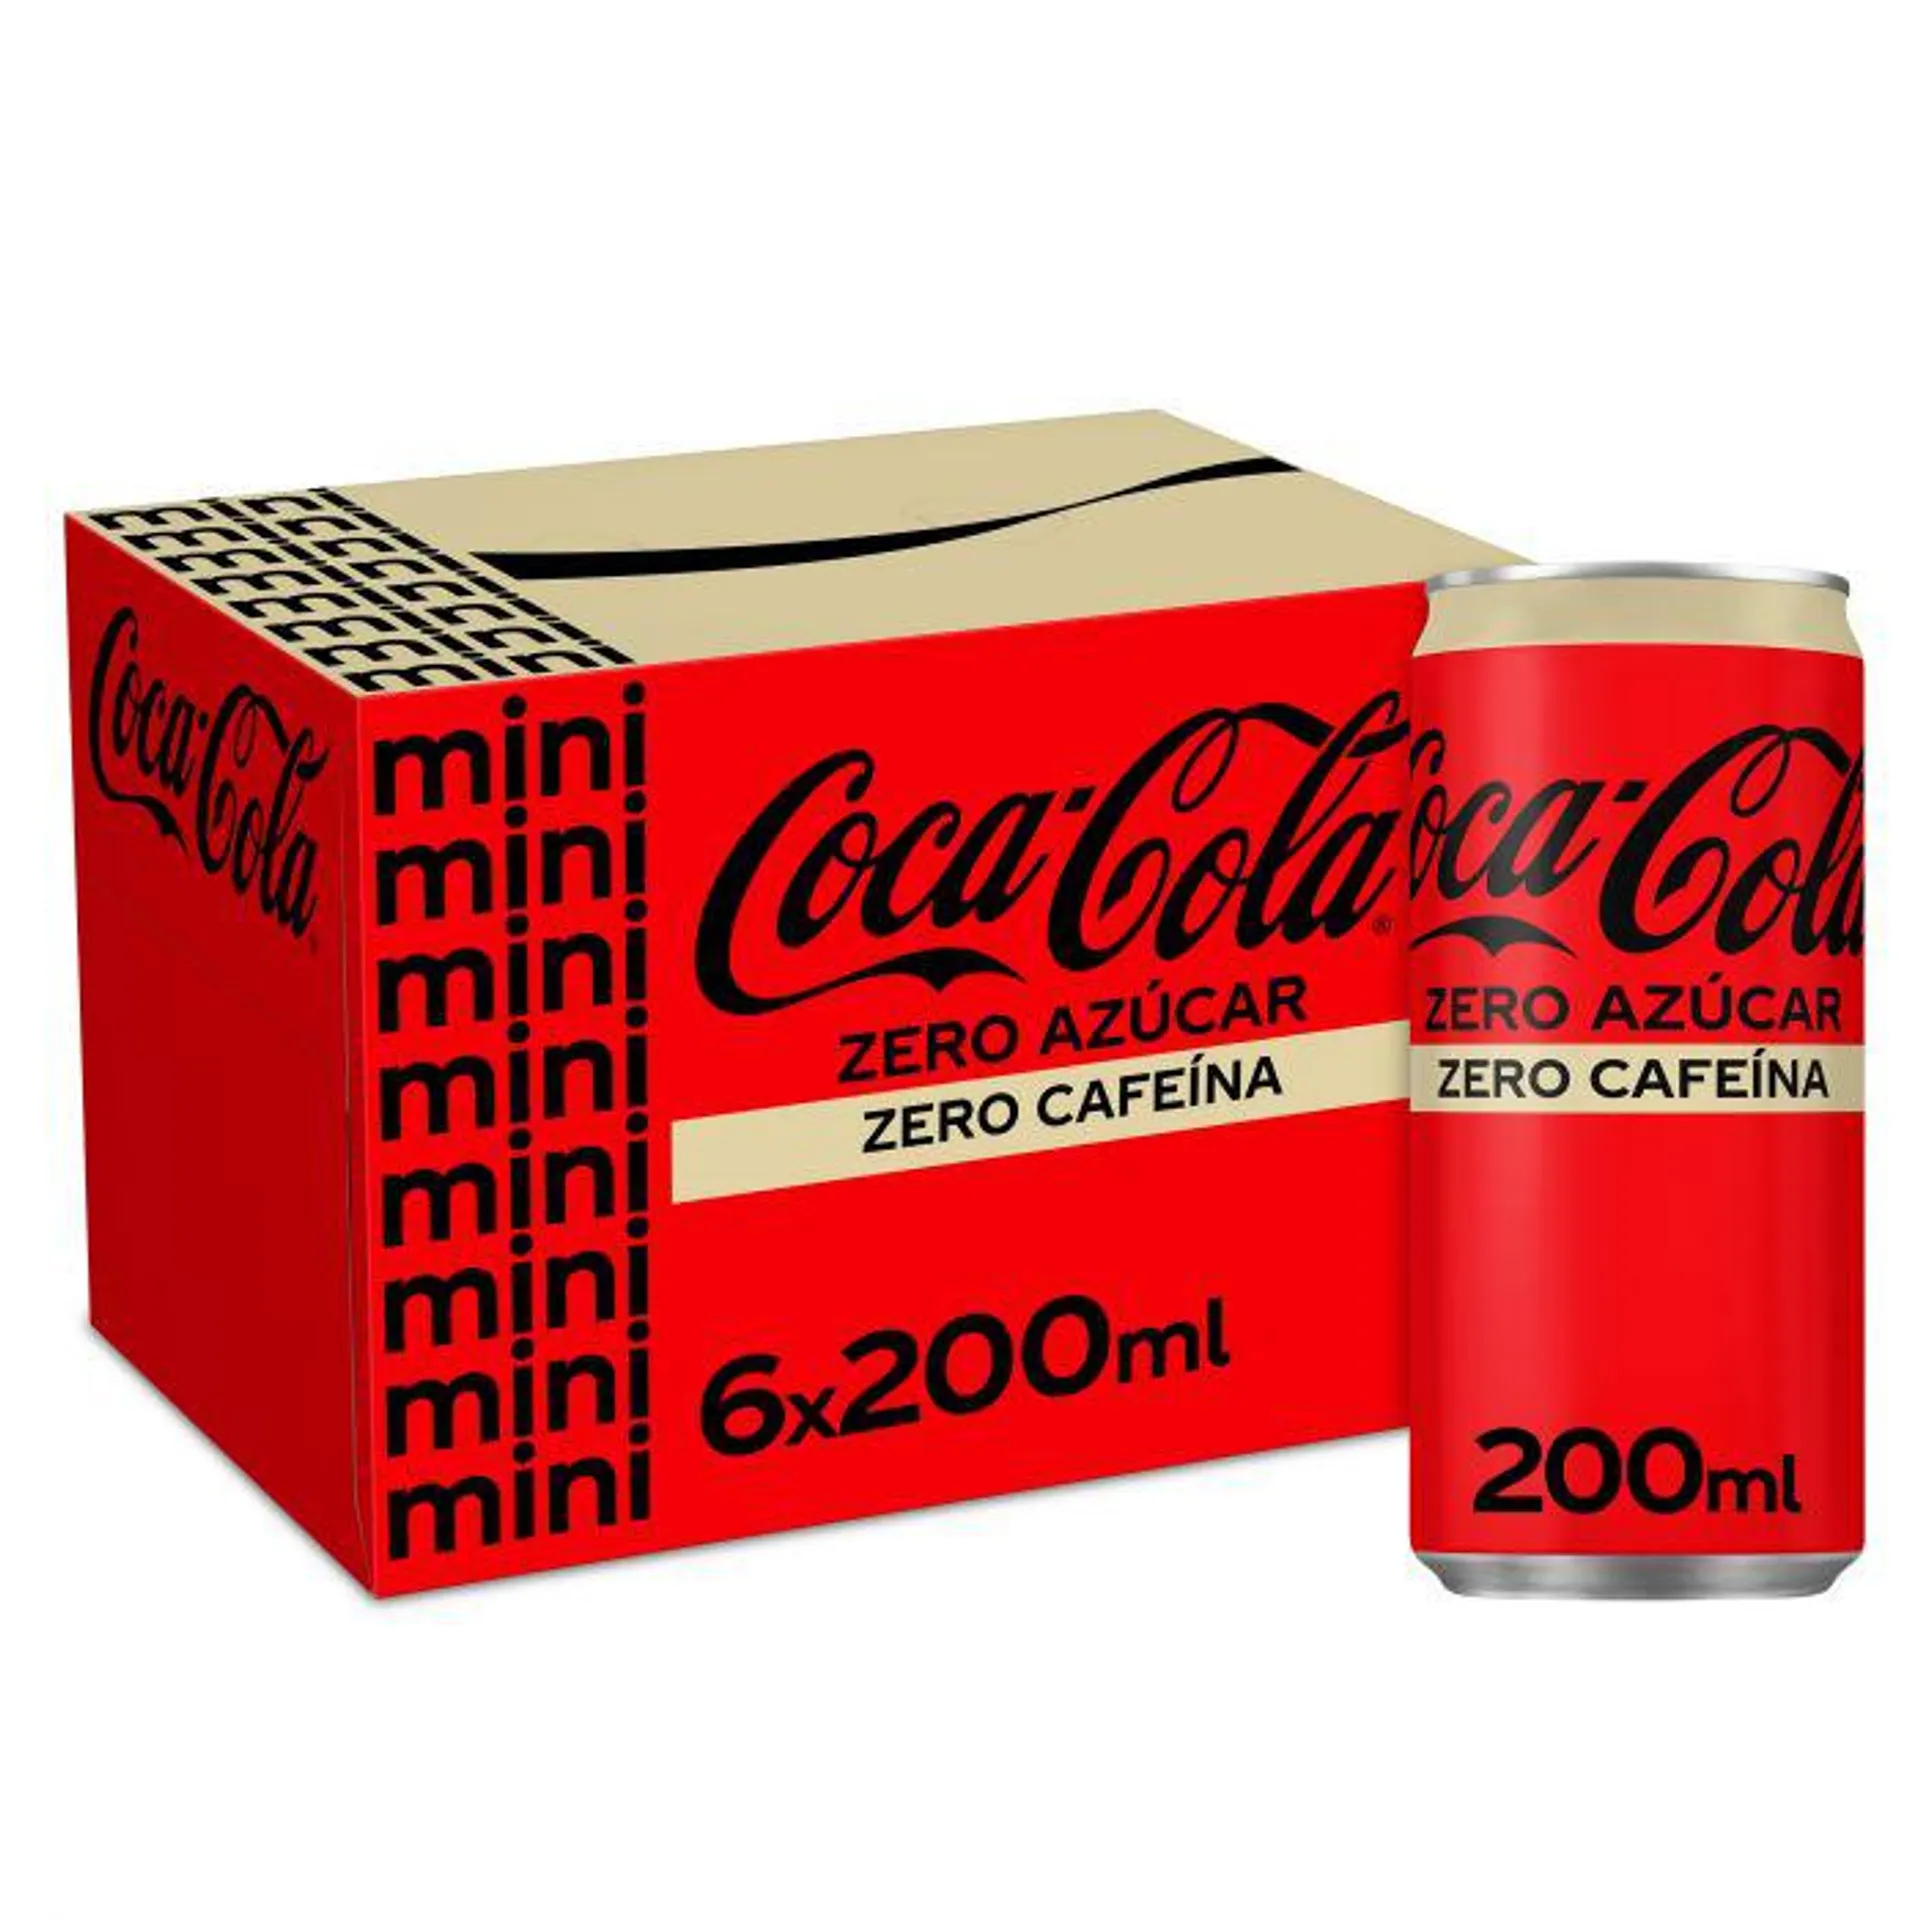 Refresco cola zero zero coca cola lata p-6x20cl